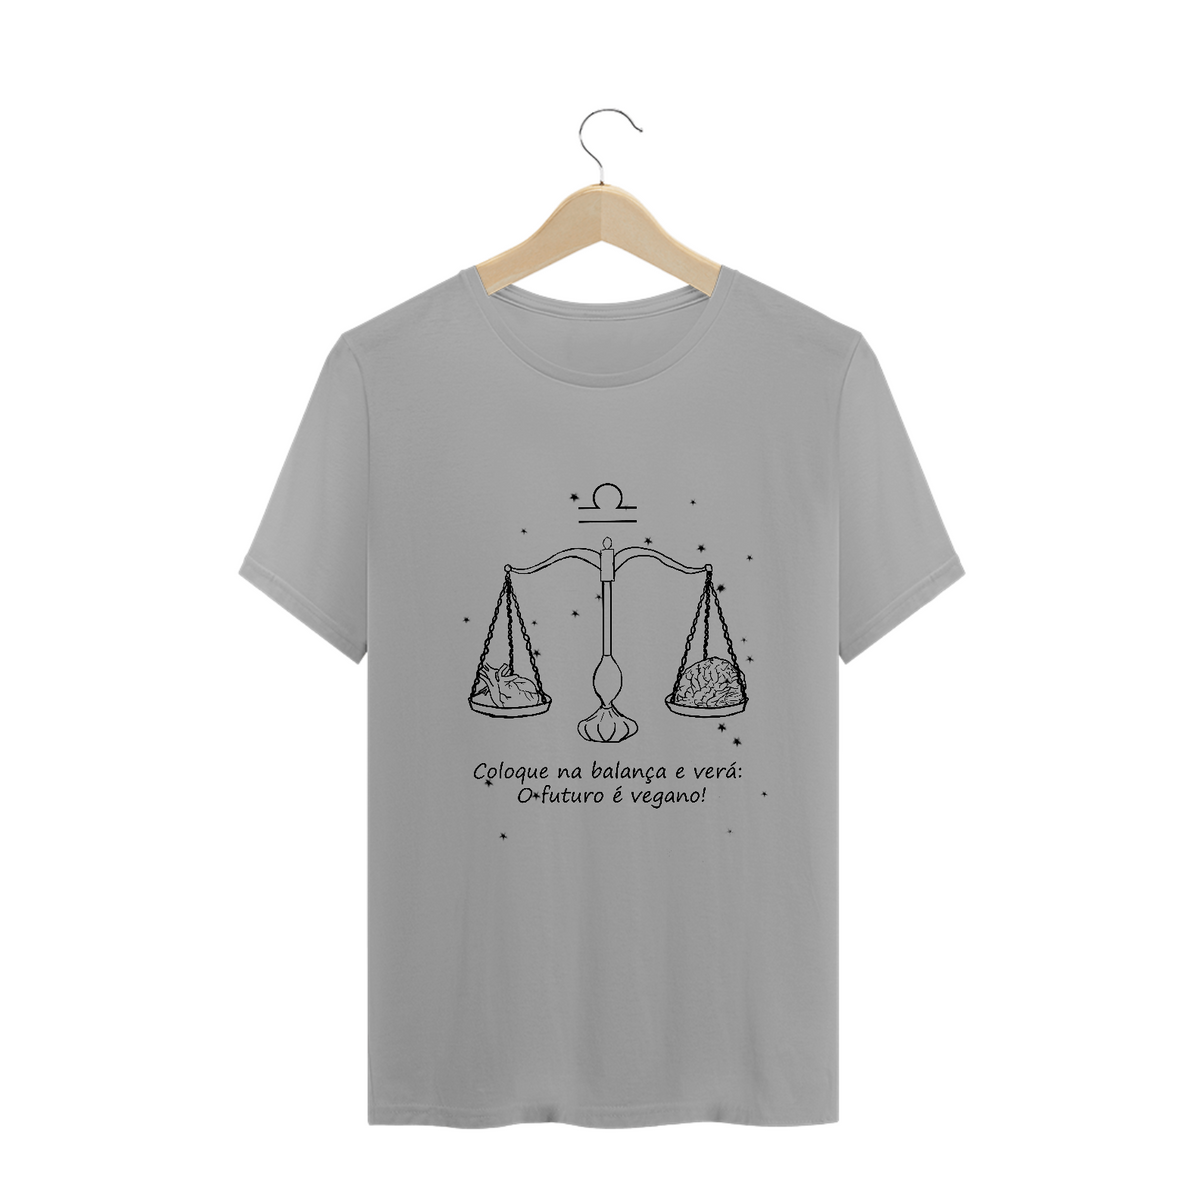 Nome do produto: Camiseta Unissex | Libra | Coloque na balança e verá: O futuro é vegano! | P&B